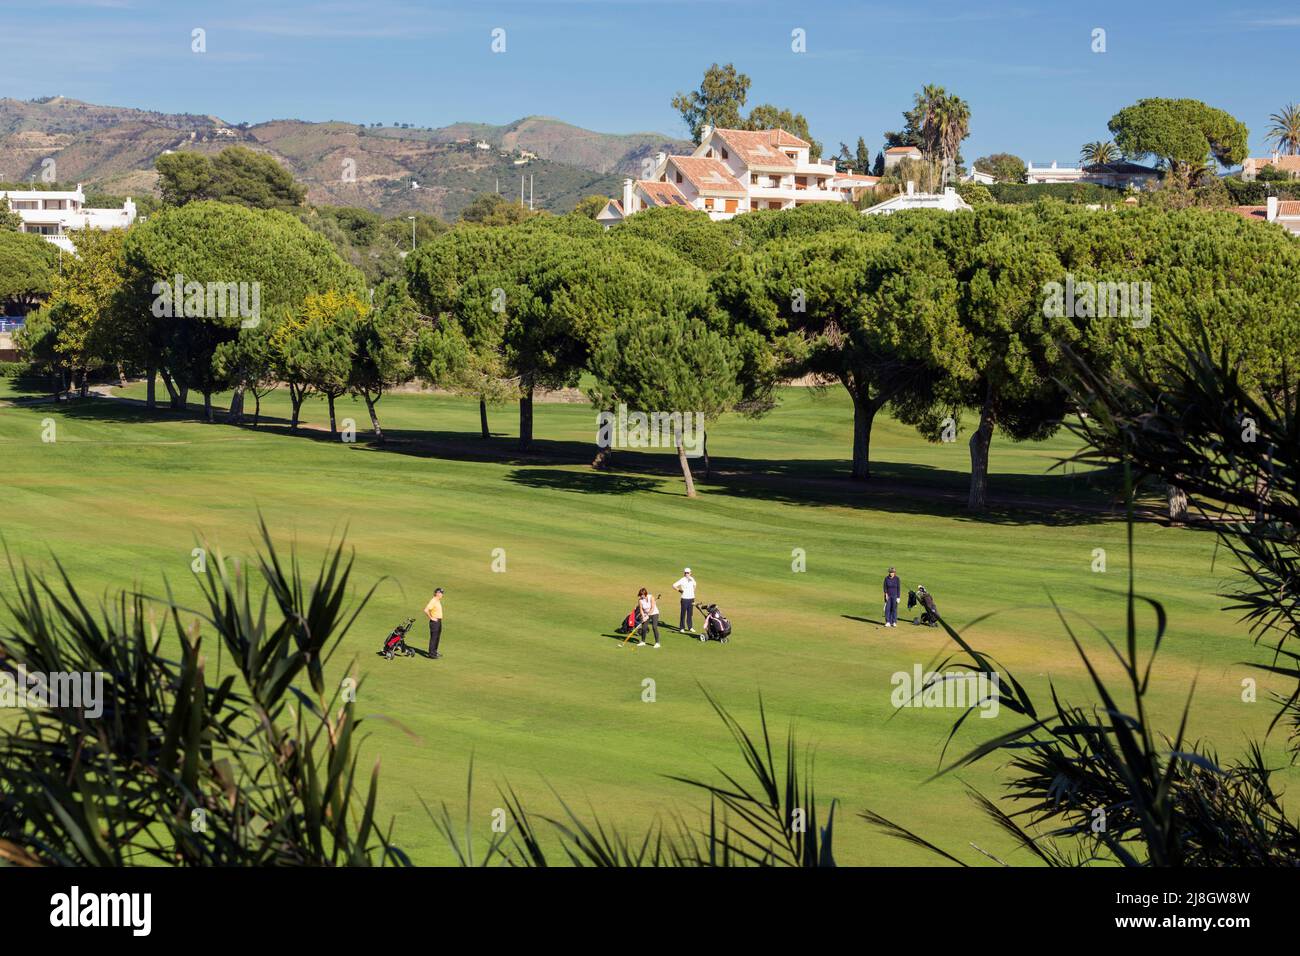 Campo de Golf Río Real, Marbella, Costa del Sol, Provincia de Málaga, Andalucía, sur de España. Grupo de golfistas jugando. Propiedad en segundo plano. Foto de stock